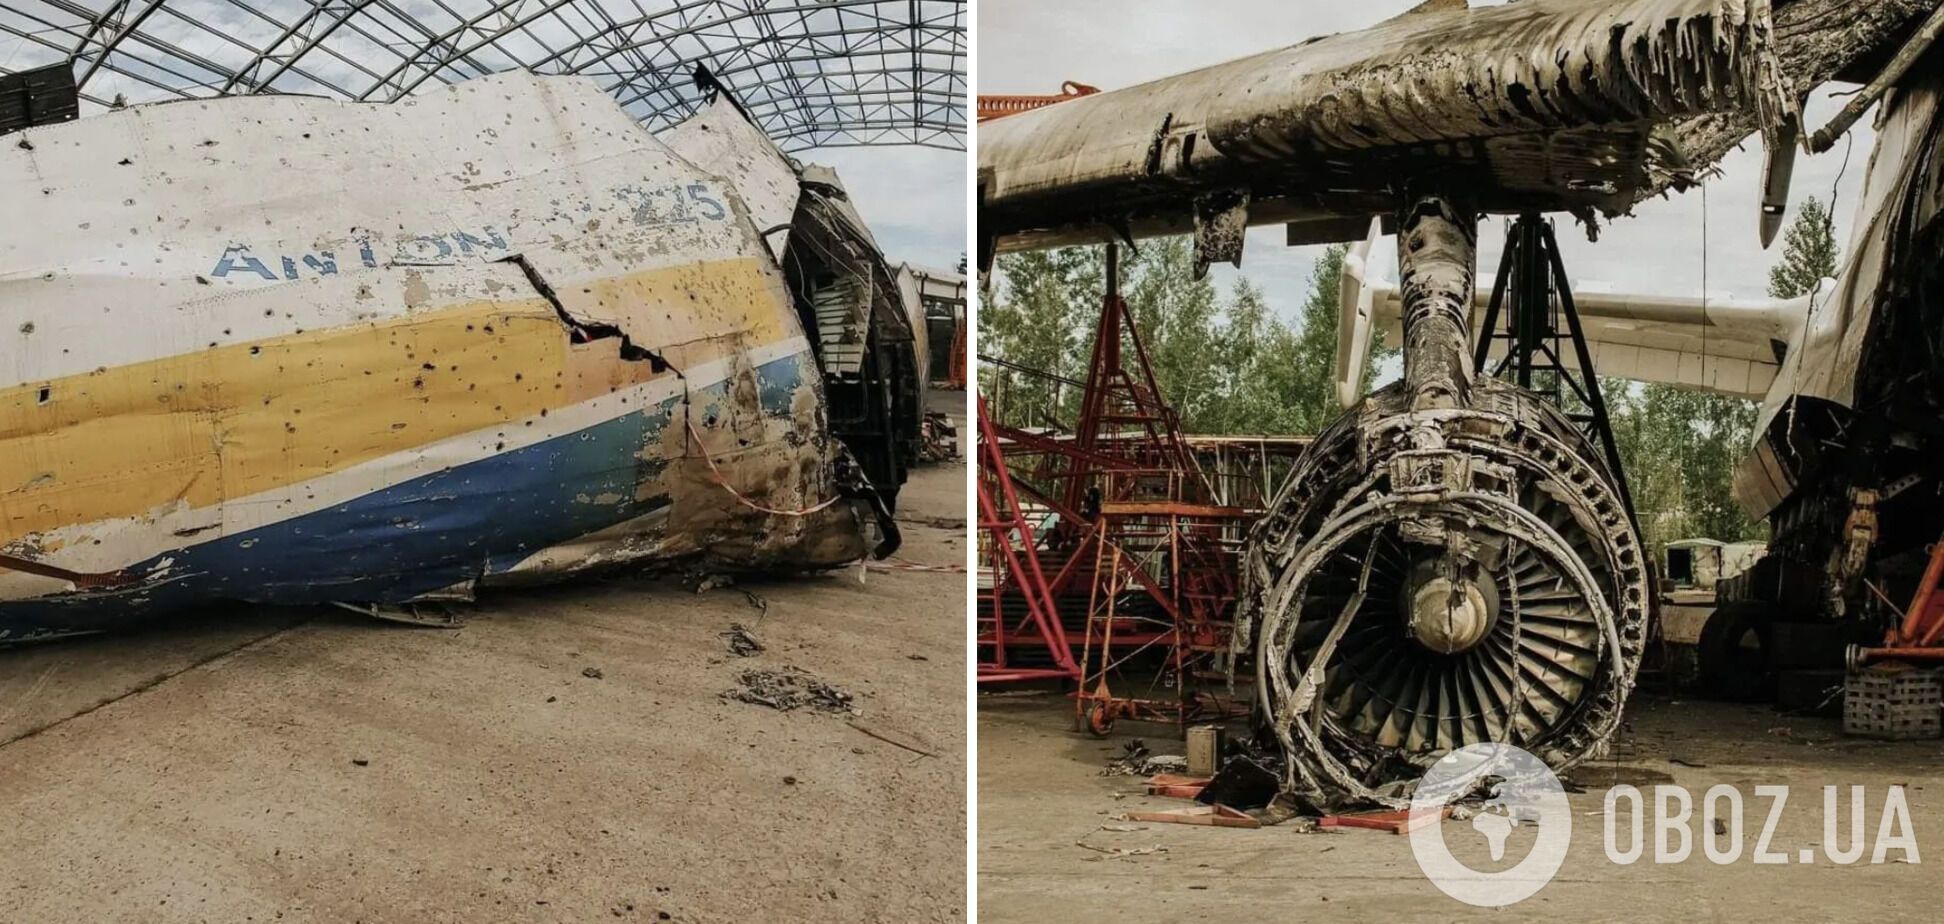 В СБУ раскрыли детали расследования по уничтожению АН-225 "Мрія": кого обвиняют и что известно